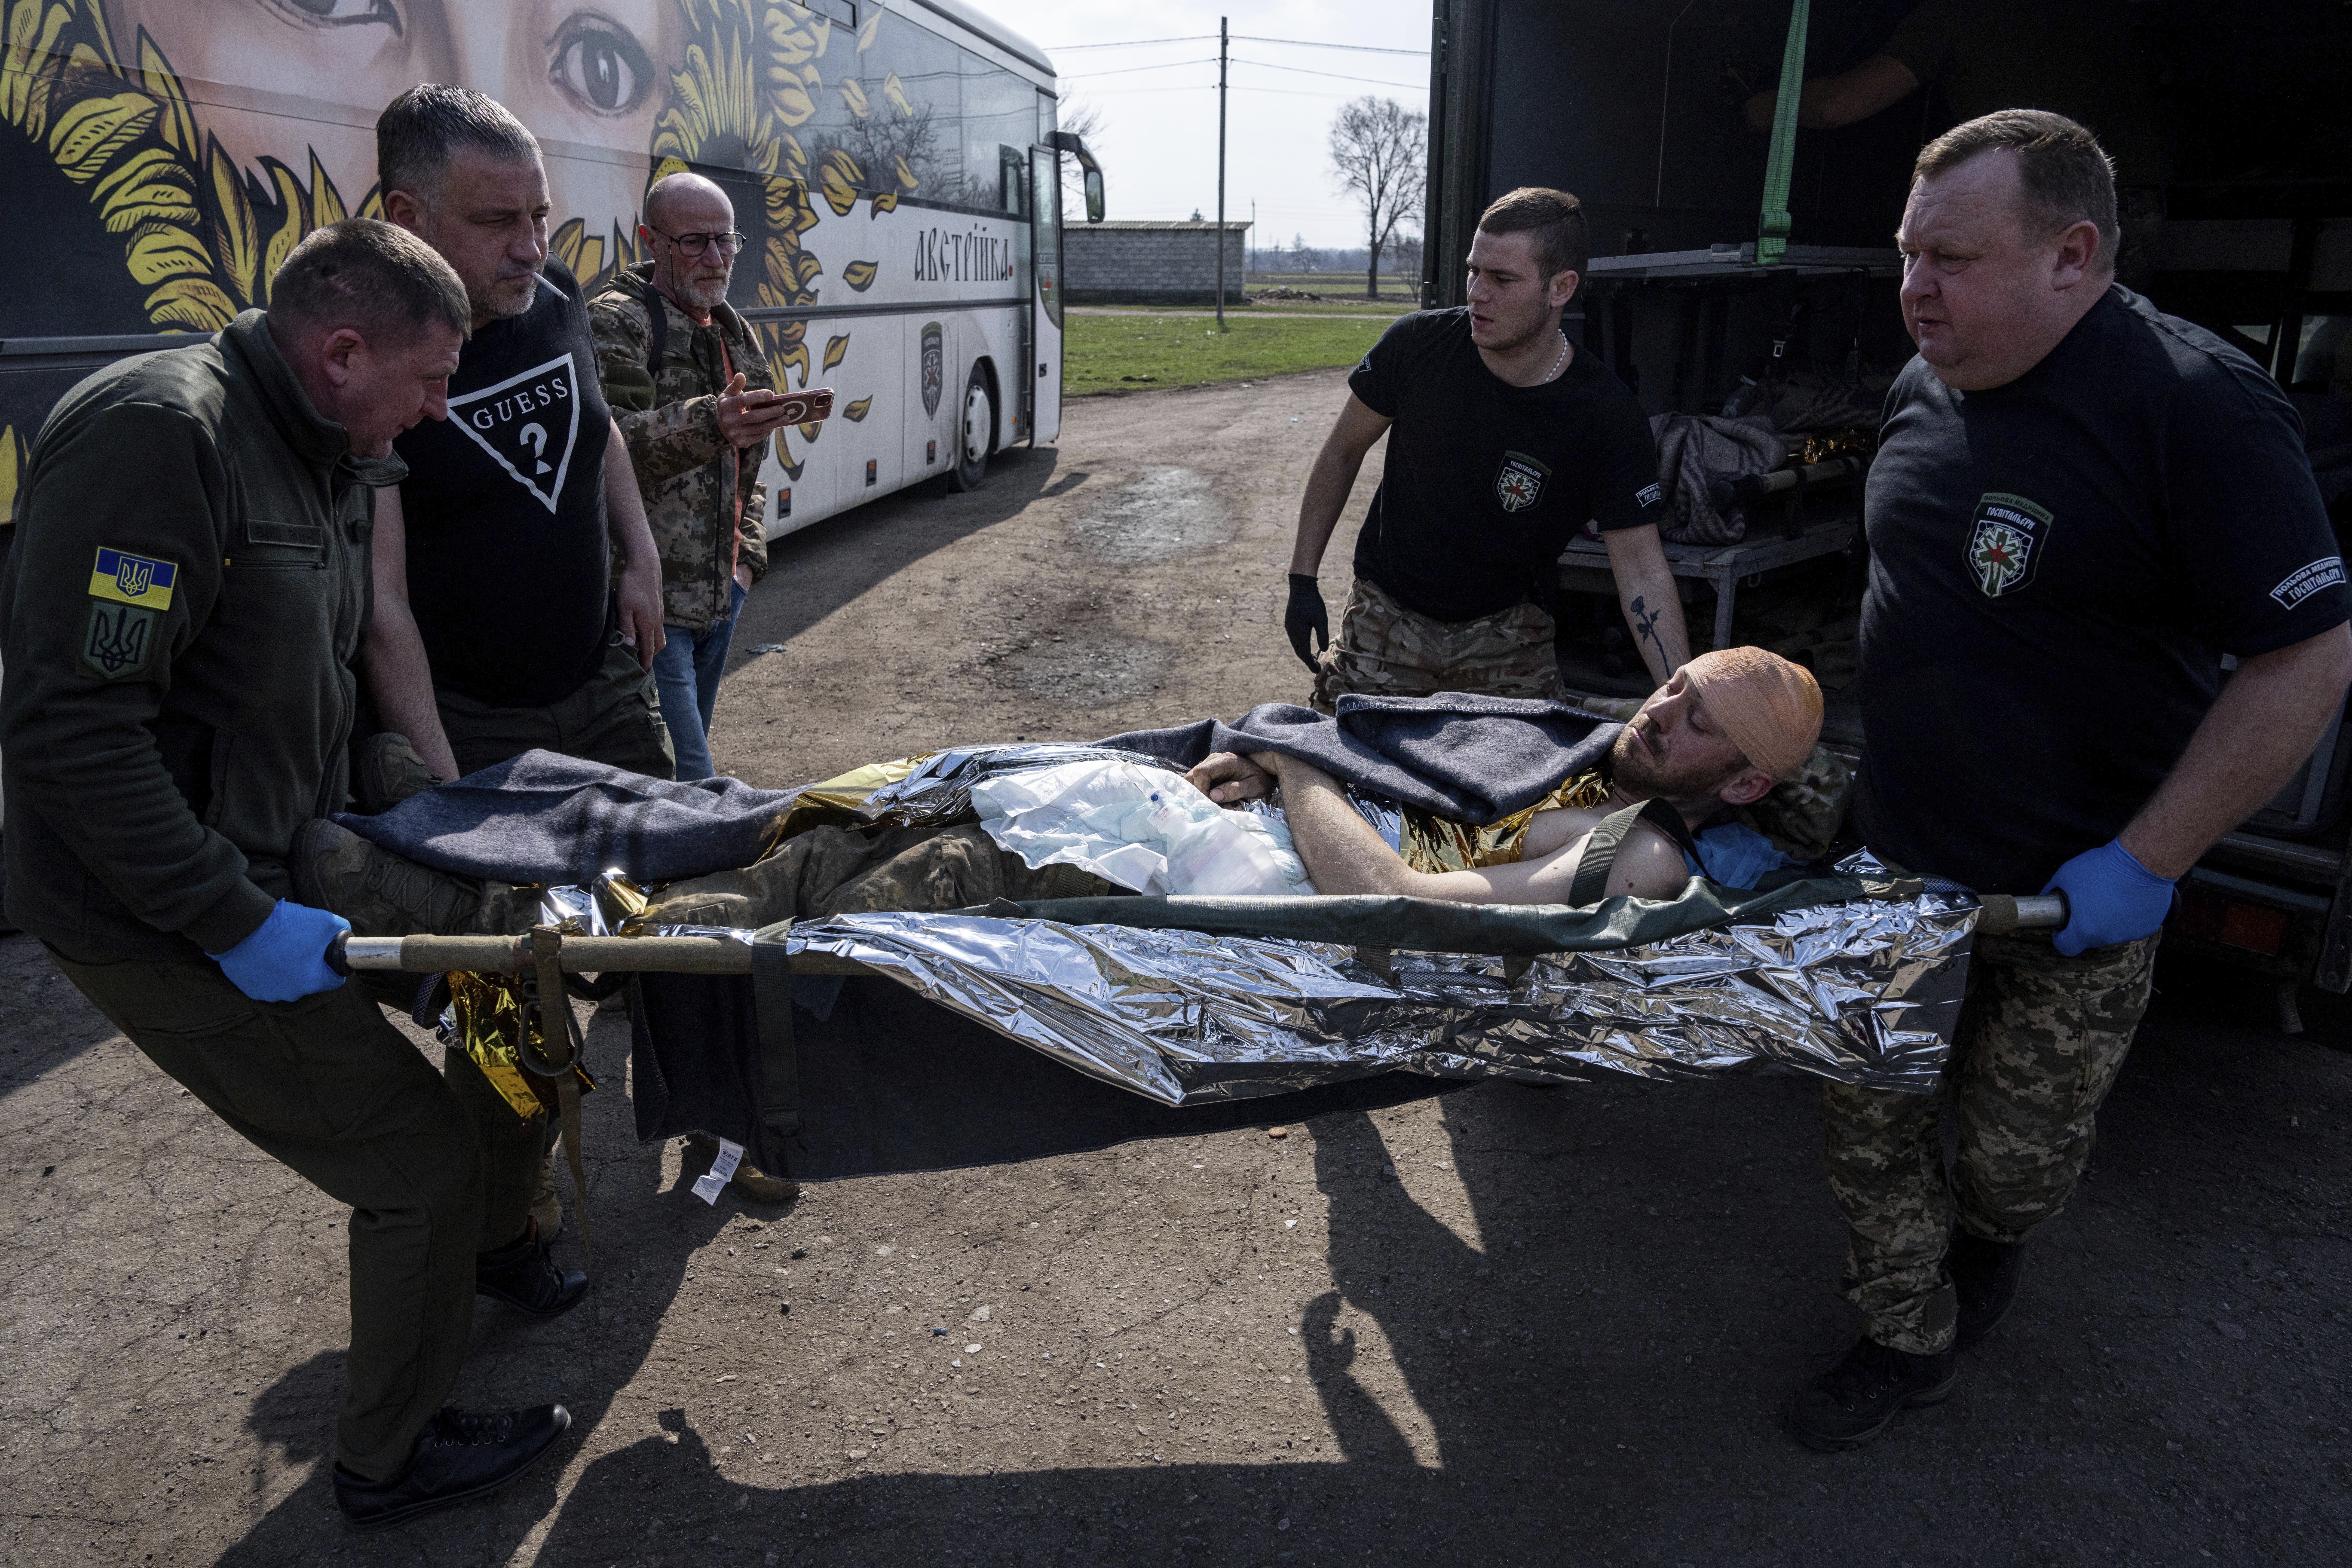 Voluntarios de la organización paramédica Hospitallers llevan a un soldado ucraniano herido a un autobús médico especial durante una evacuación en la región de Donetsk, Ucrania, el miércoles 22 de marzo de 2023. (AP Foto/Evgeniy Maloletka)